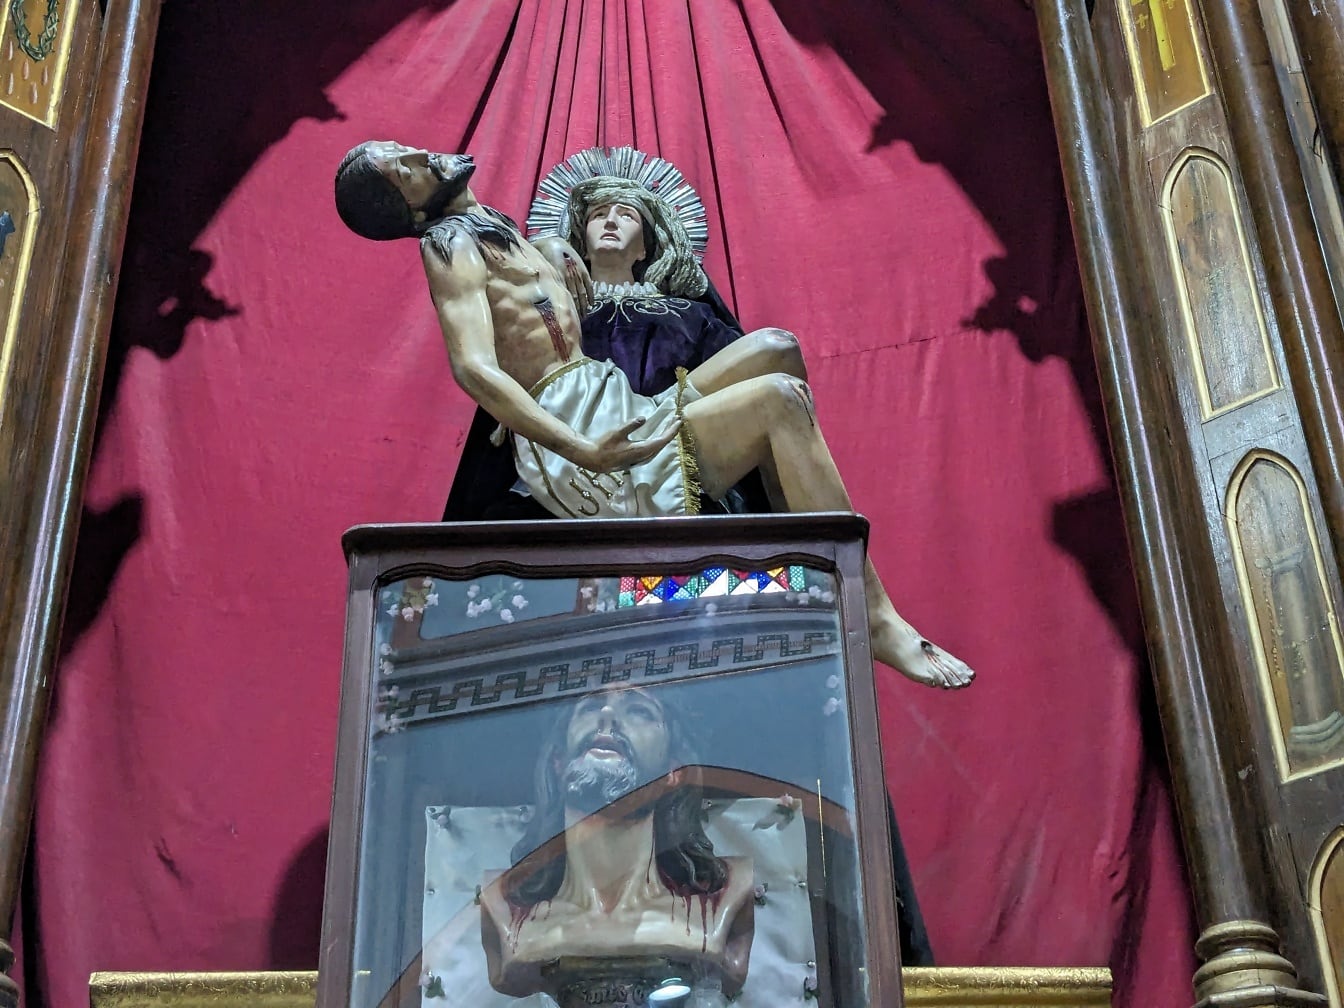 Άγαλμα της Παναγίας που κρατά το αναστημένο σώμα του Ιησού Χριστού